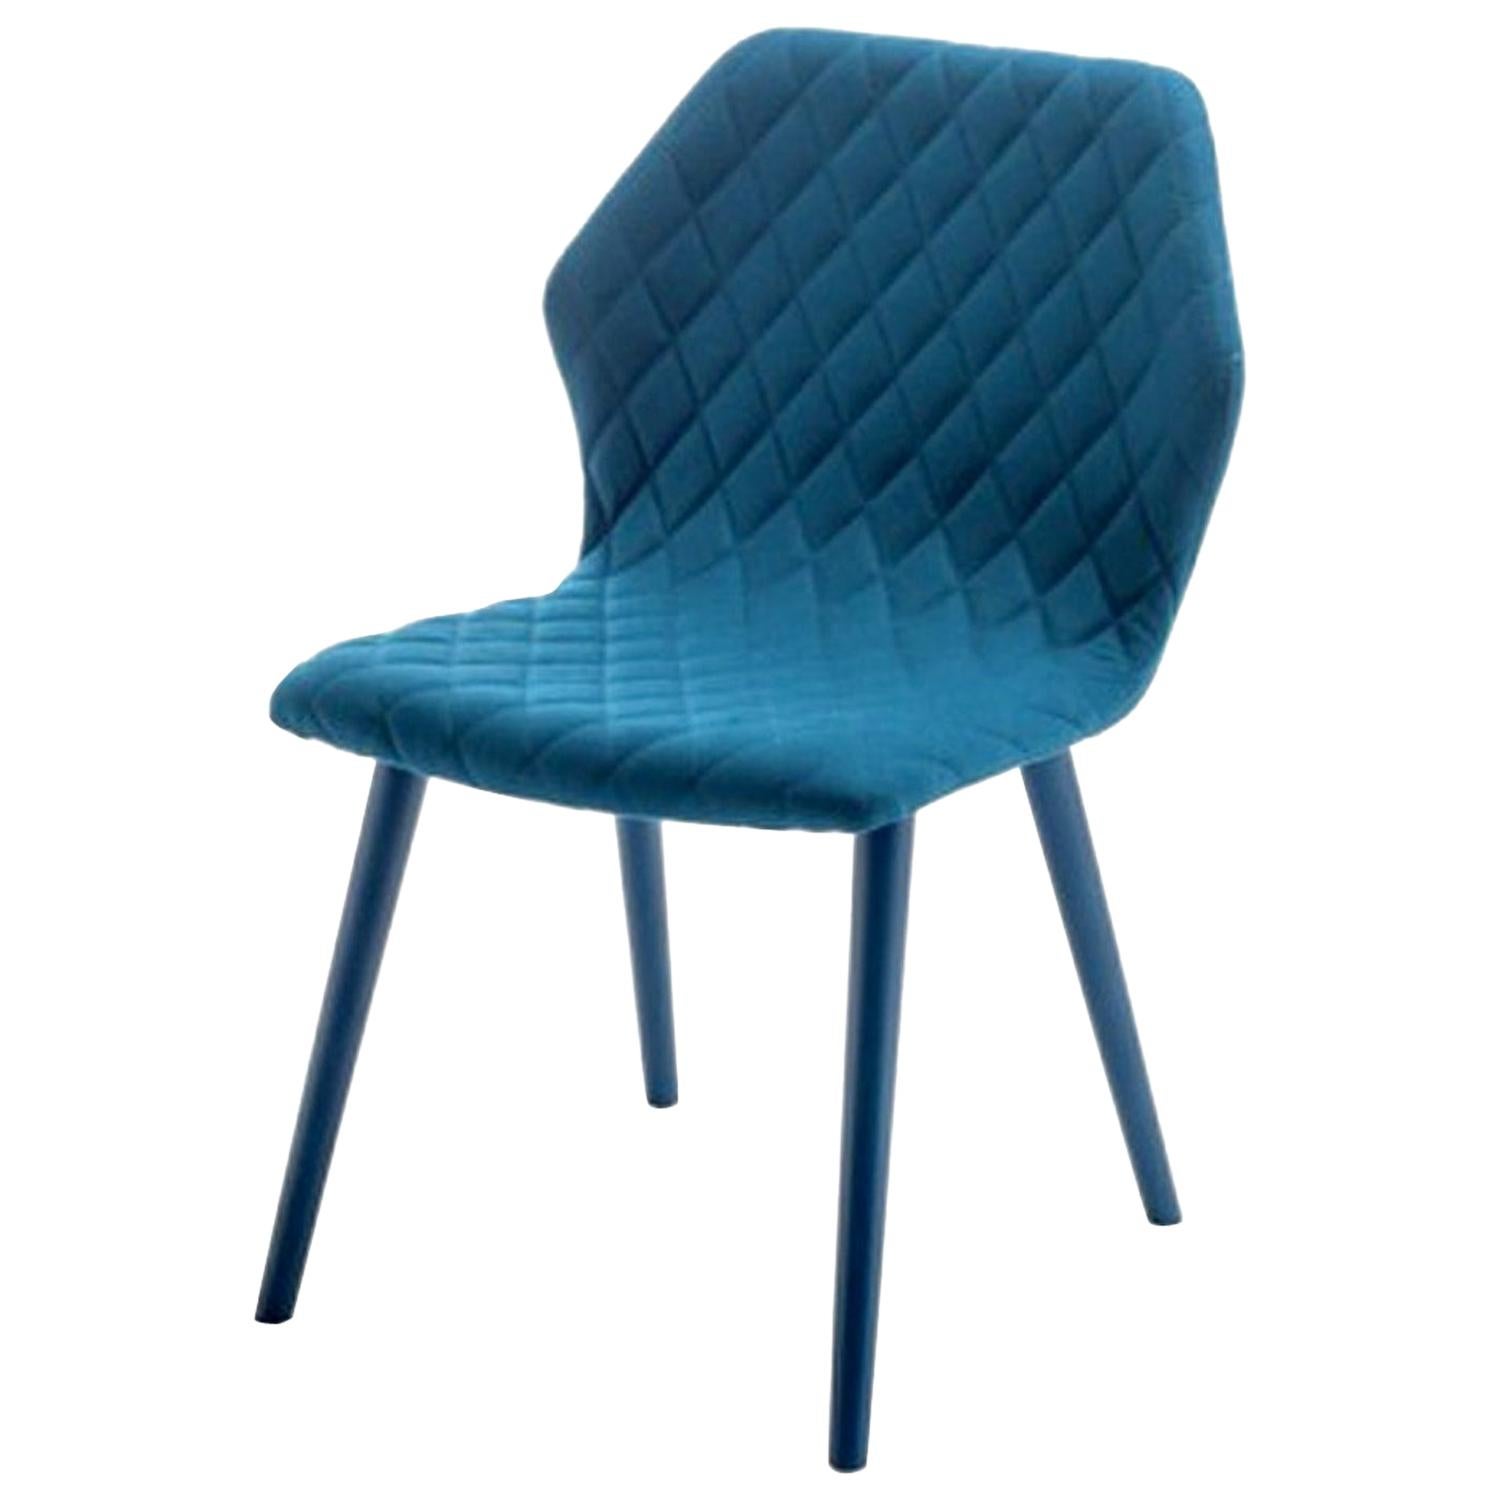 Chaise matelassée Ava en cuir bleu, conçue par Michael Schmidt, fabriquée en Italie